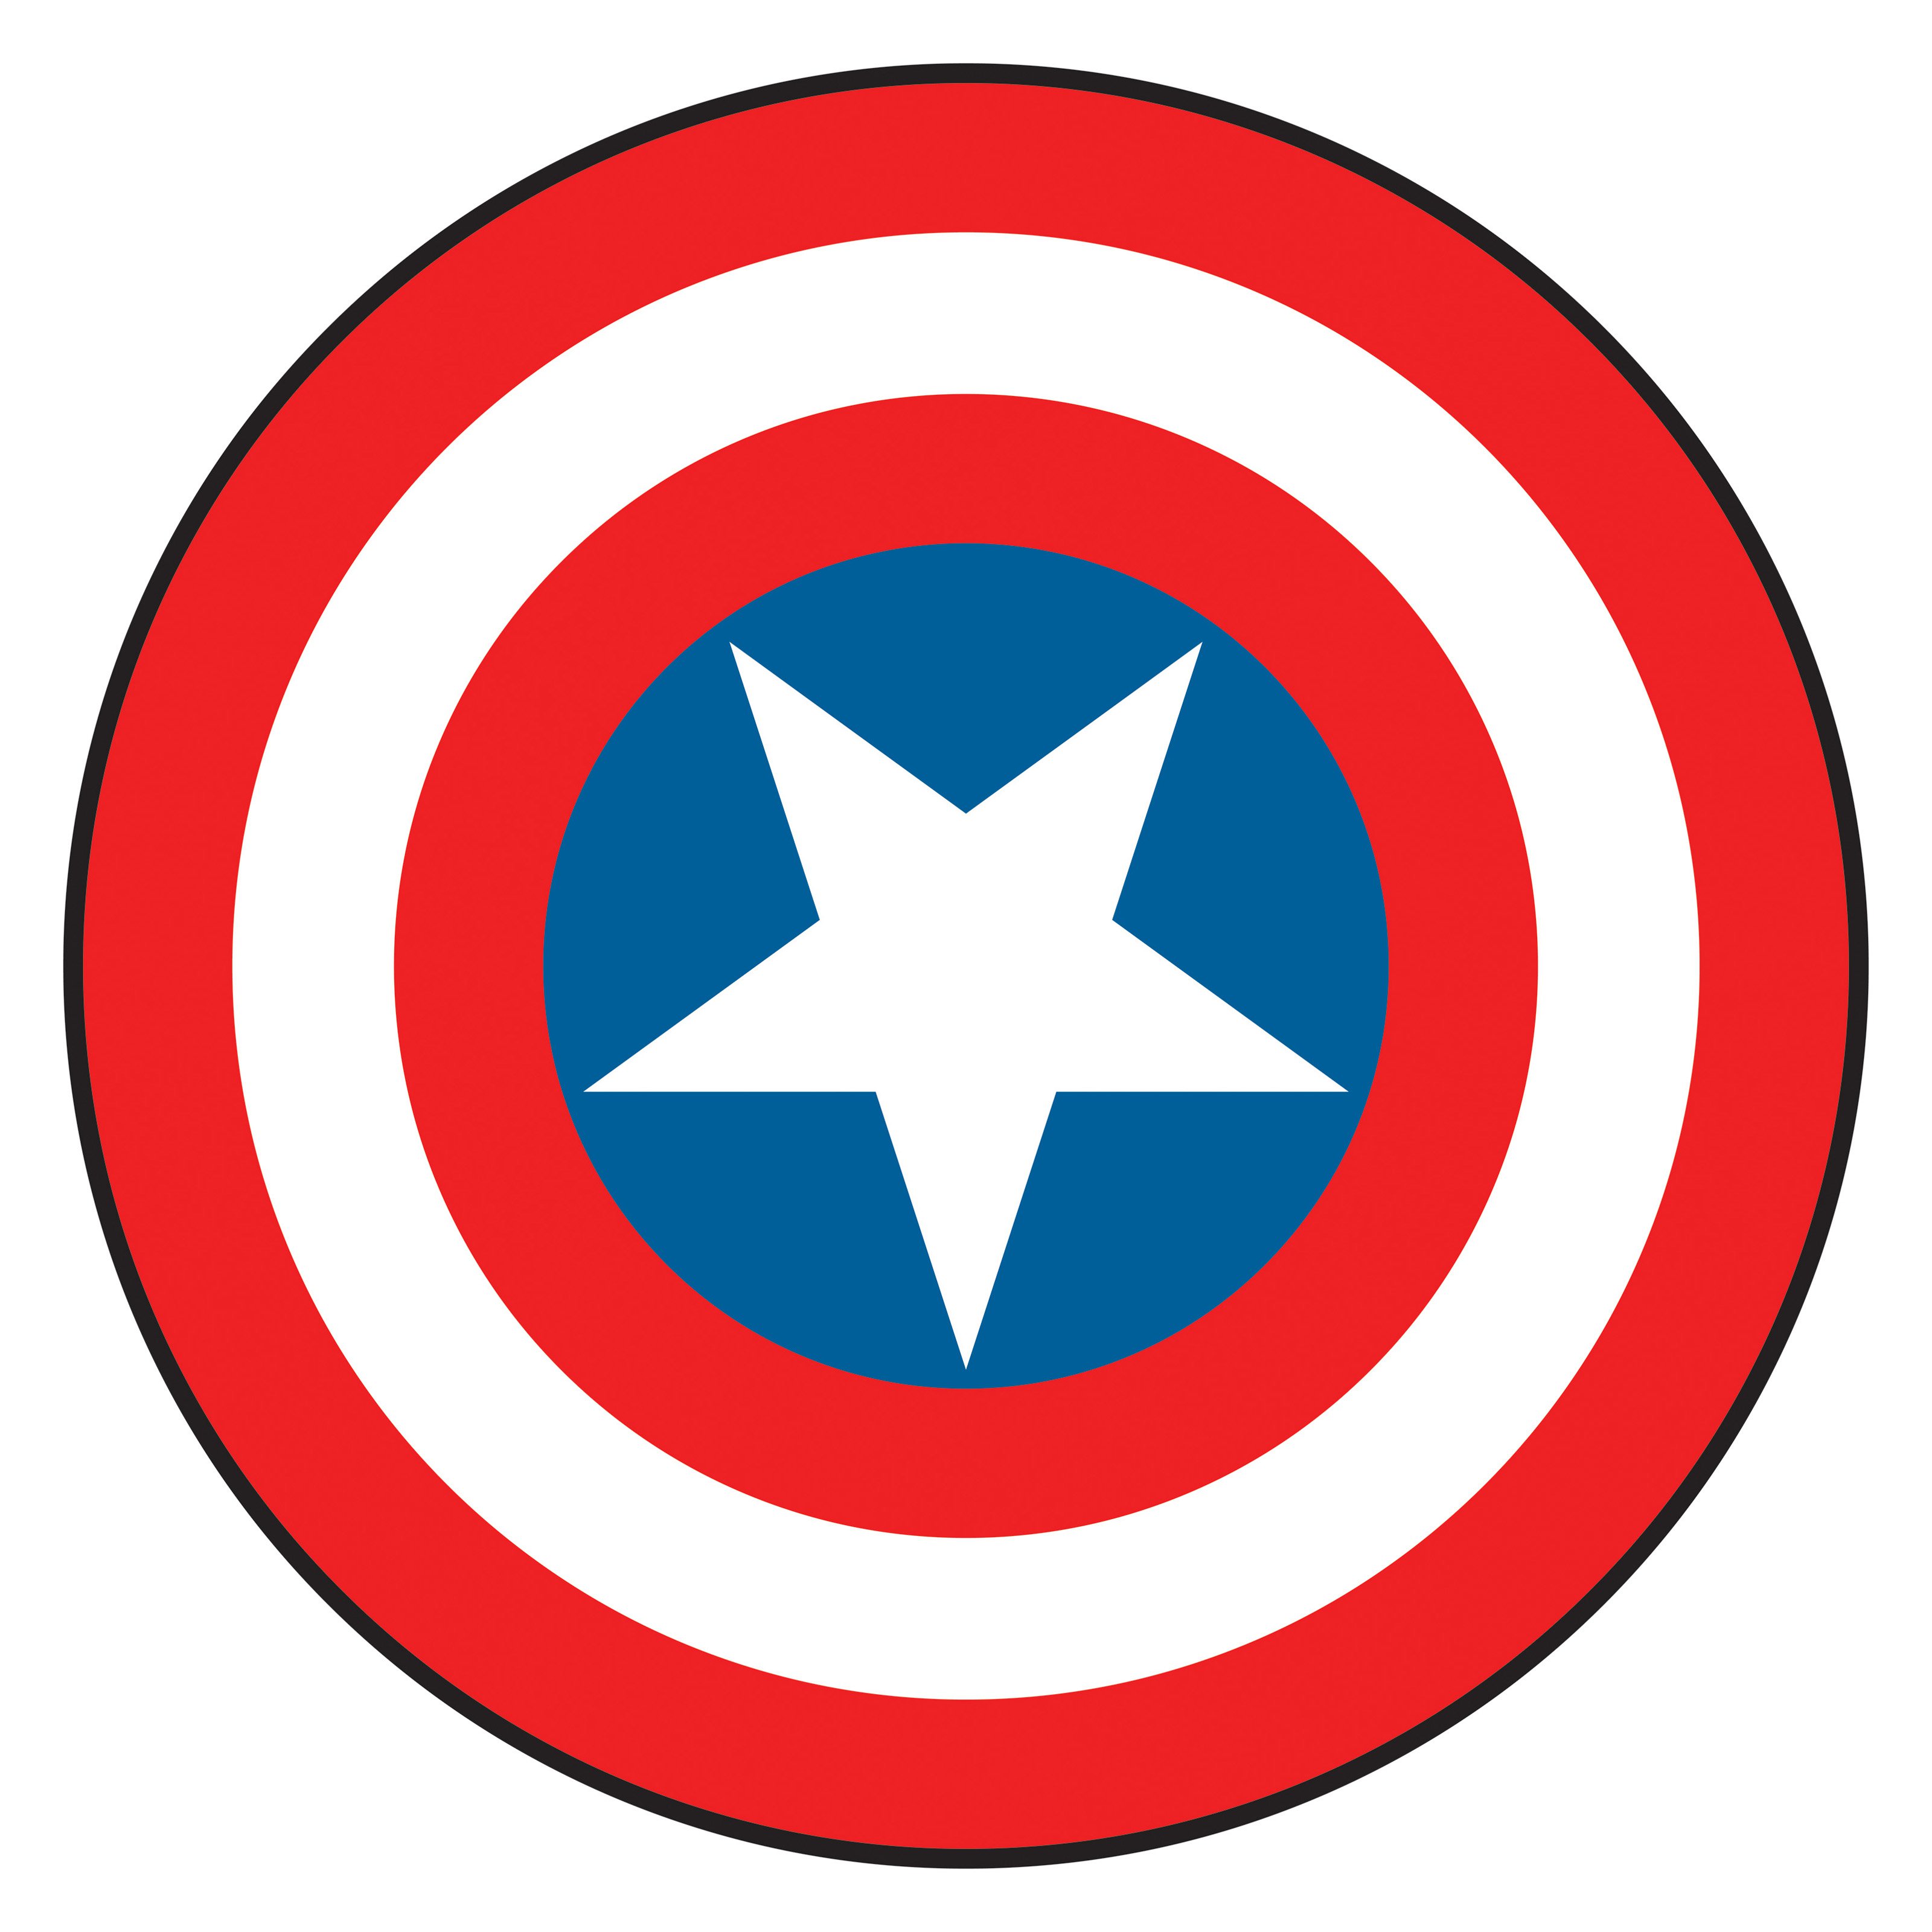 Captain america shield clipart